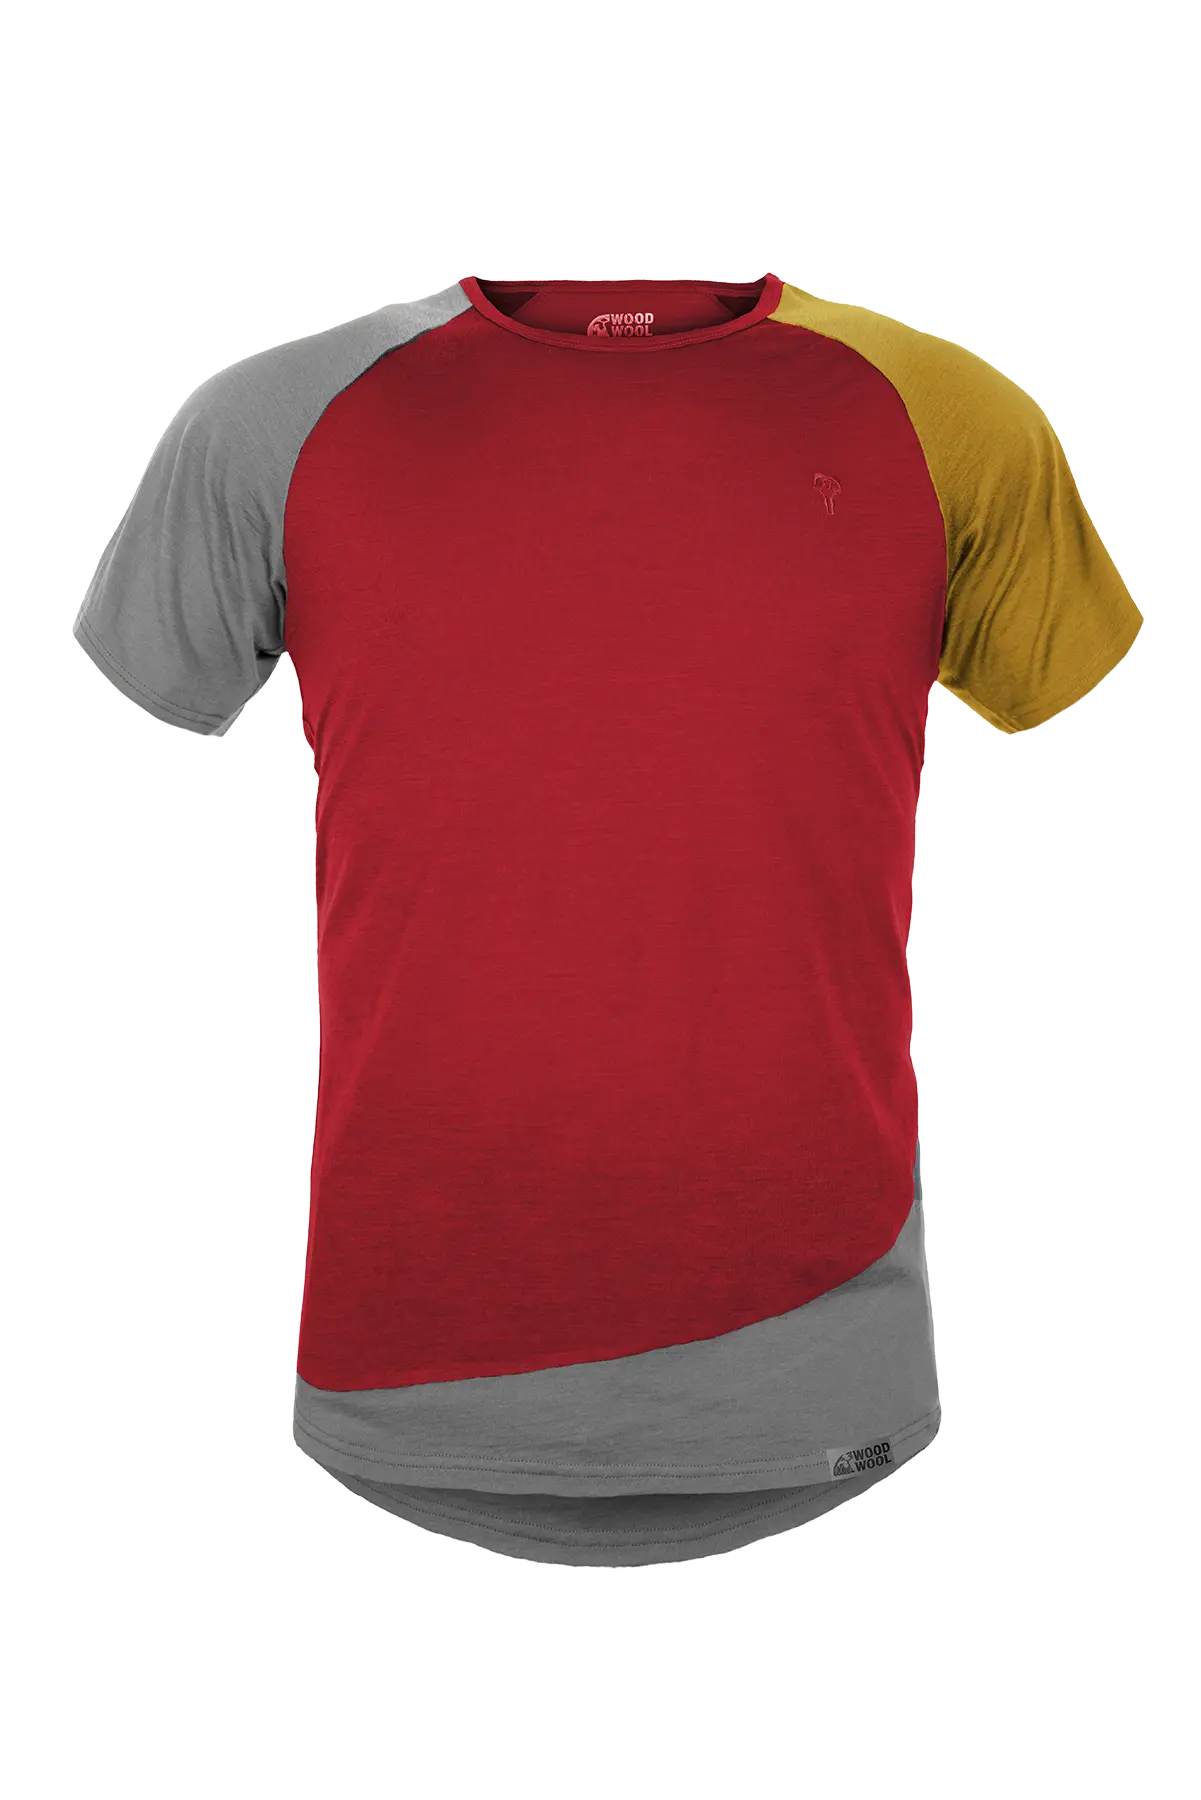 gruezi-bag-woodwool-t-shirt-mr-kirk-2710-2714-2700-5002-fired-red-brick-amainfrei Kopie